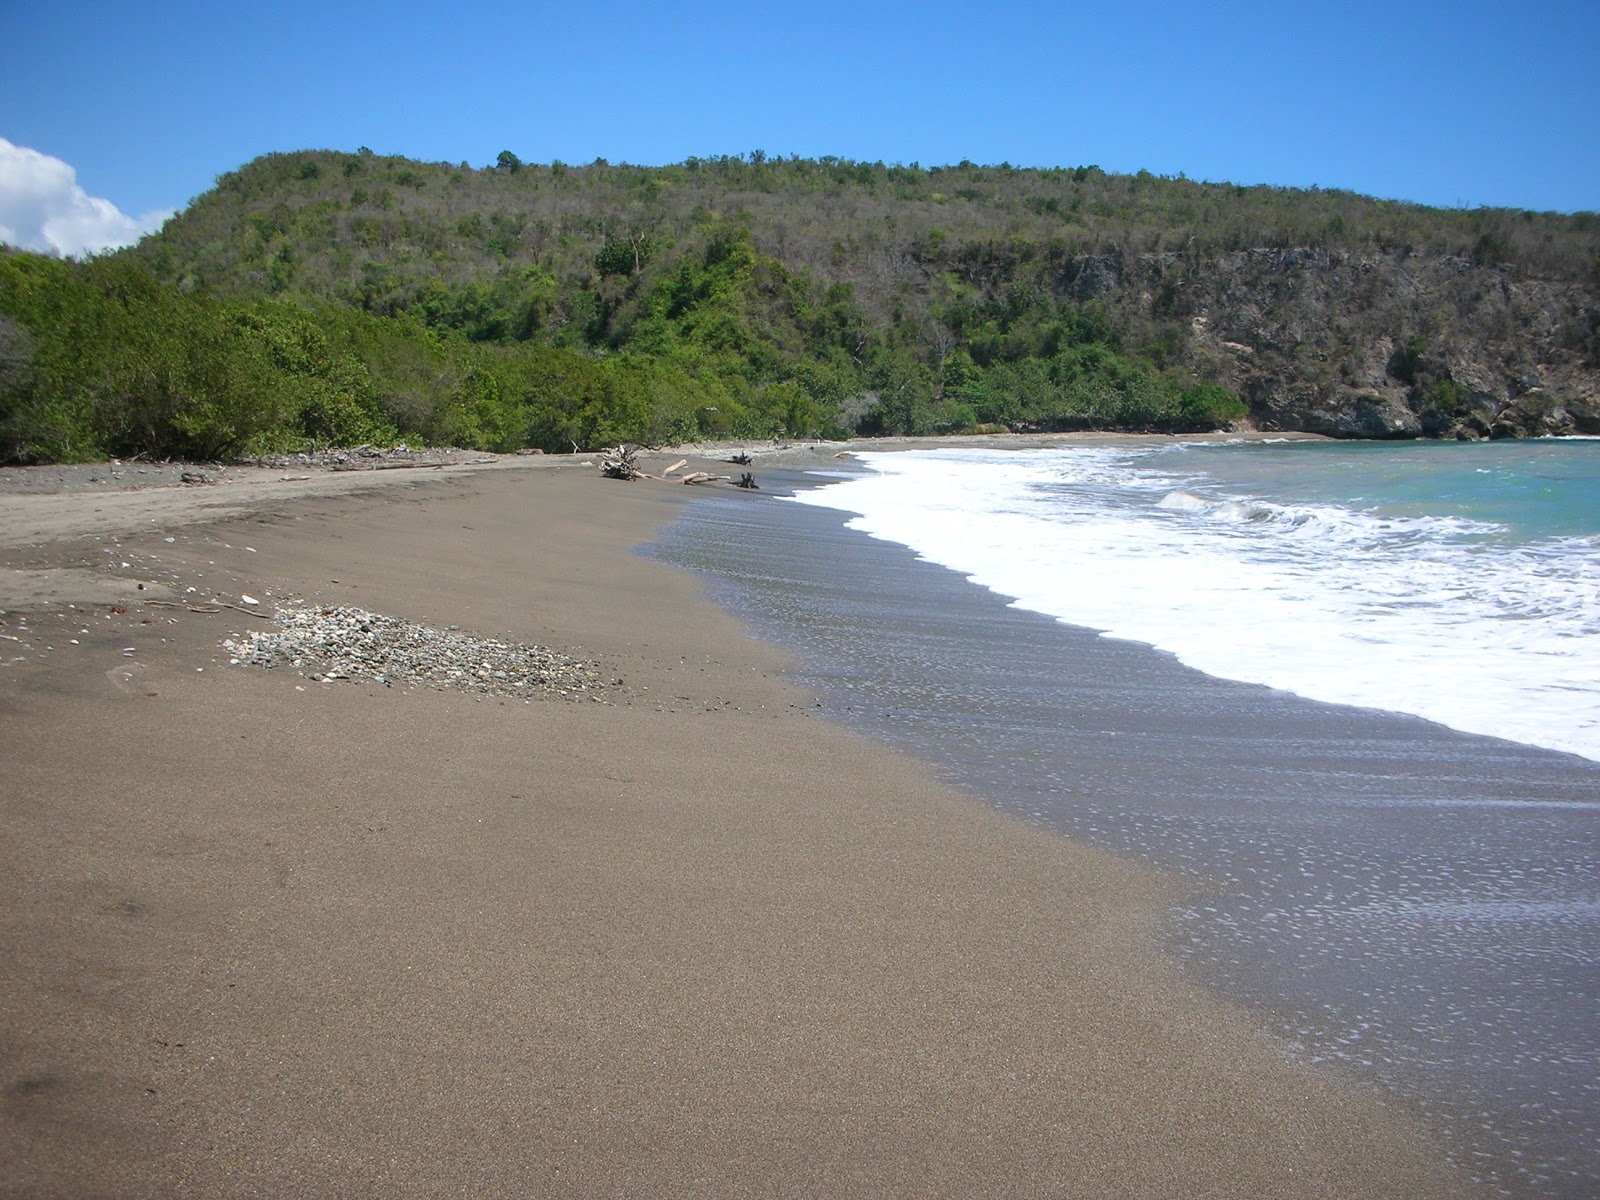 Playa Toro'in fotoğrafı parlak kum yüzey ile